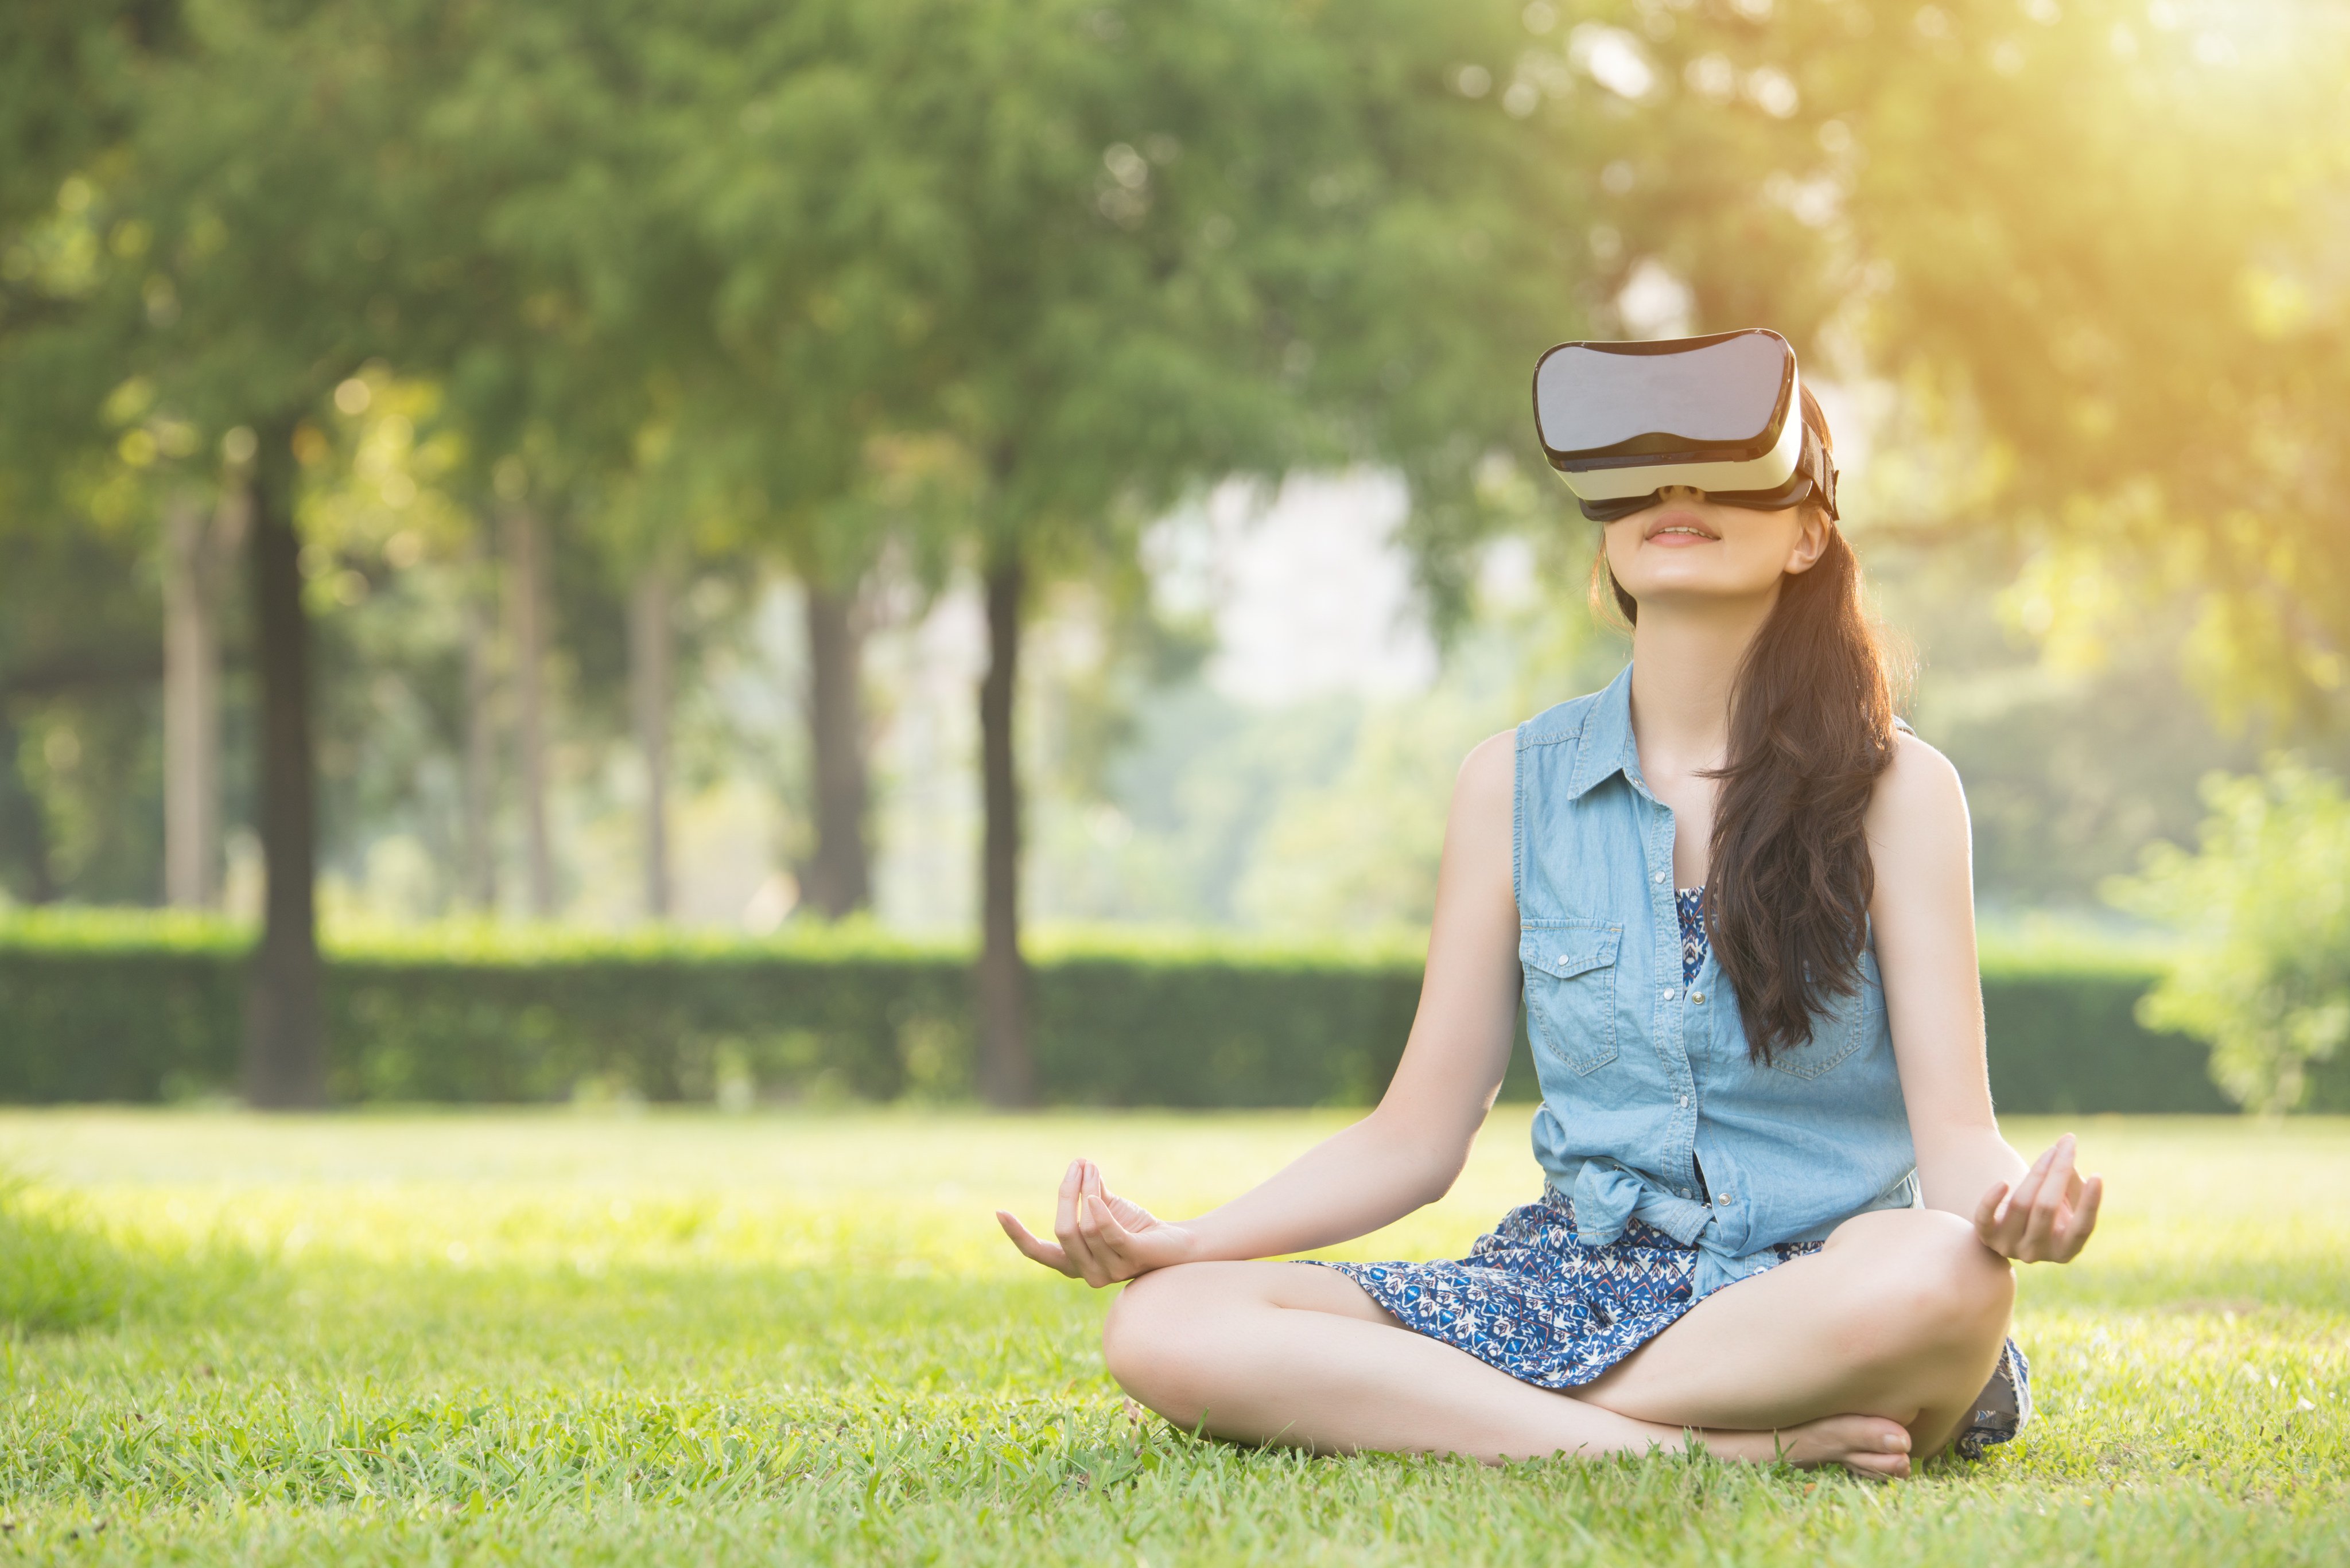 Relaxing Zen music in 360 VR  Tree of Awakening - Meditation music for  Oculus Quest 